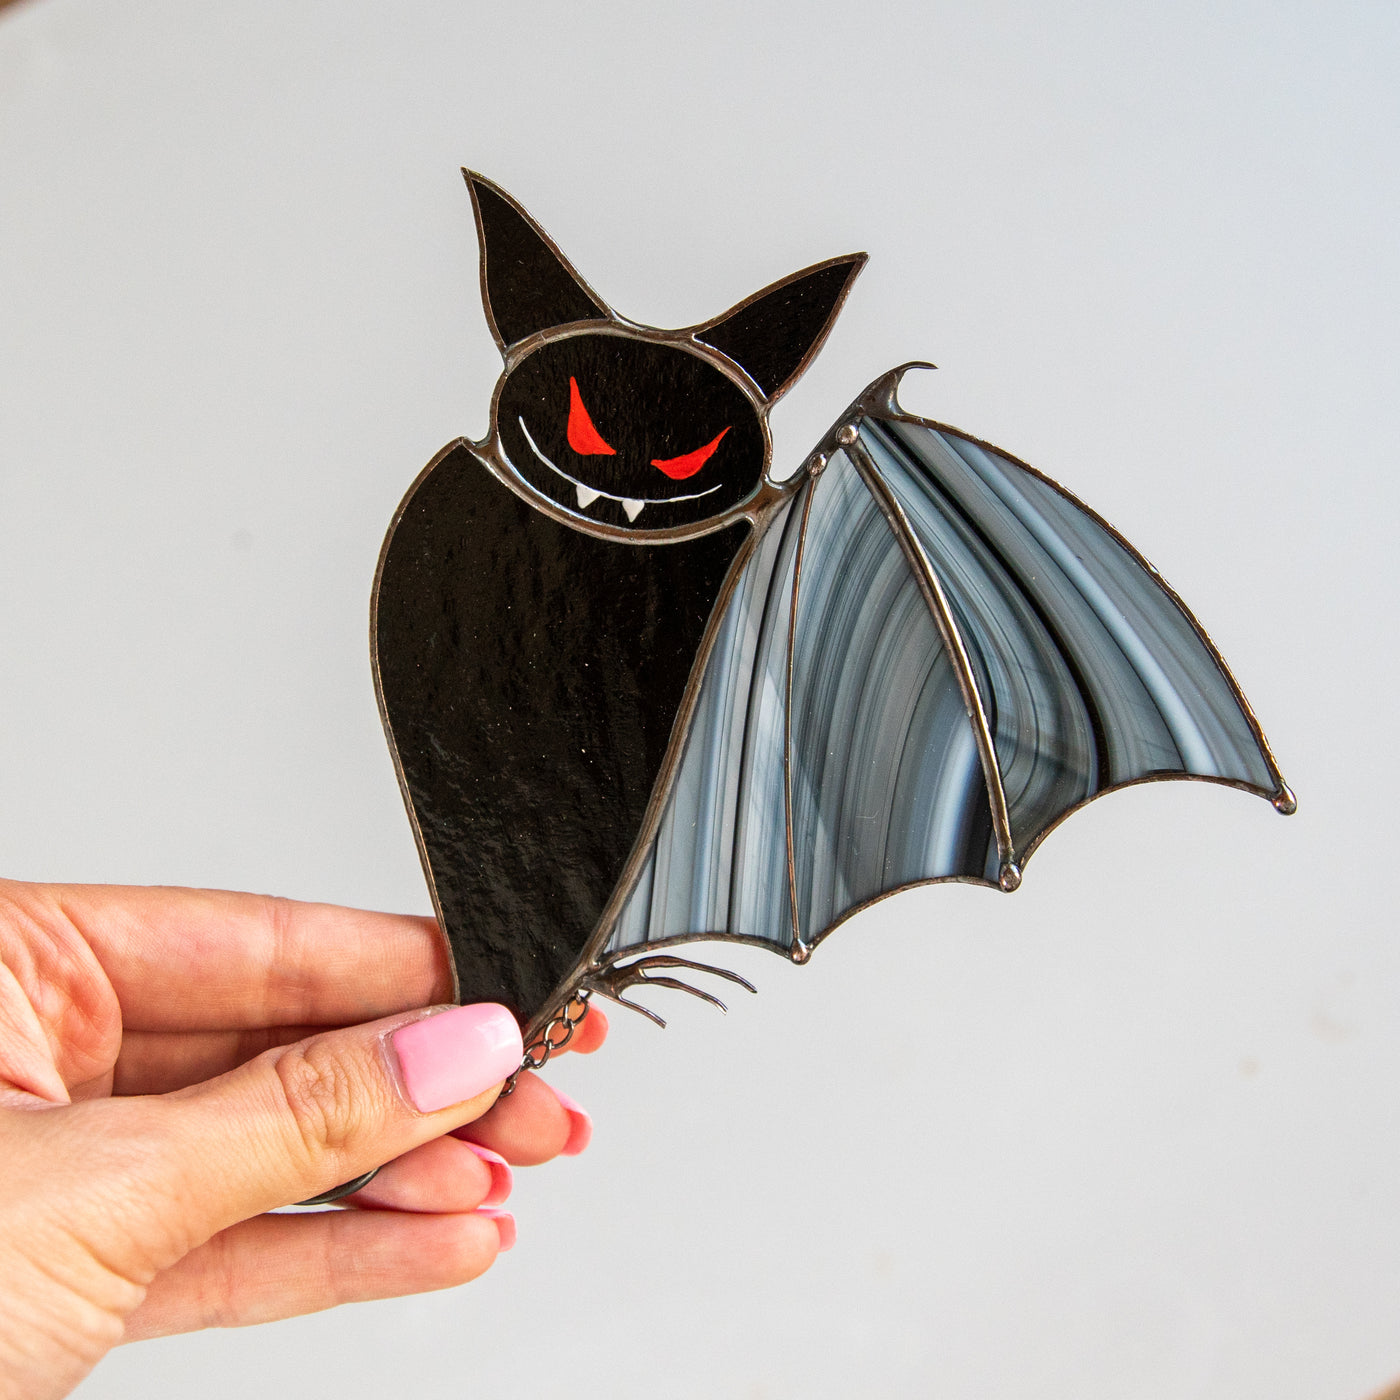 Stained glass black bat suncatcher for Halloween decor